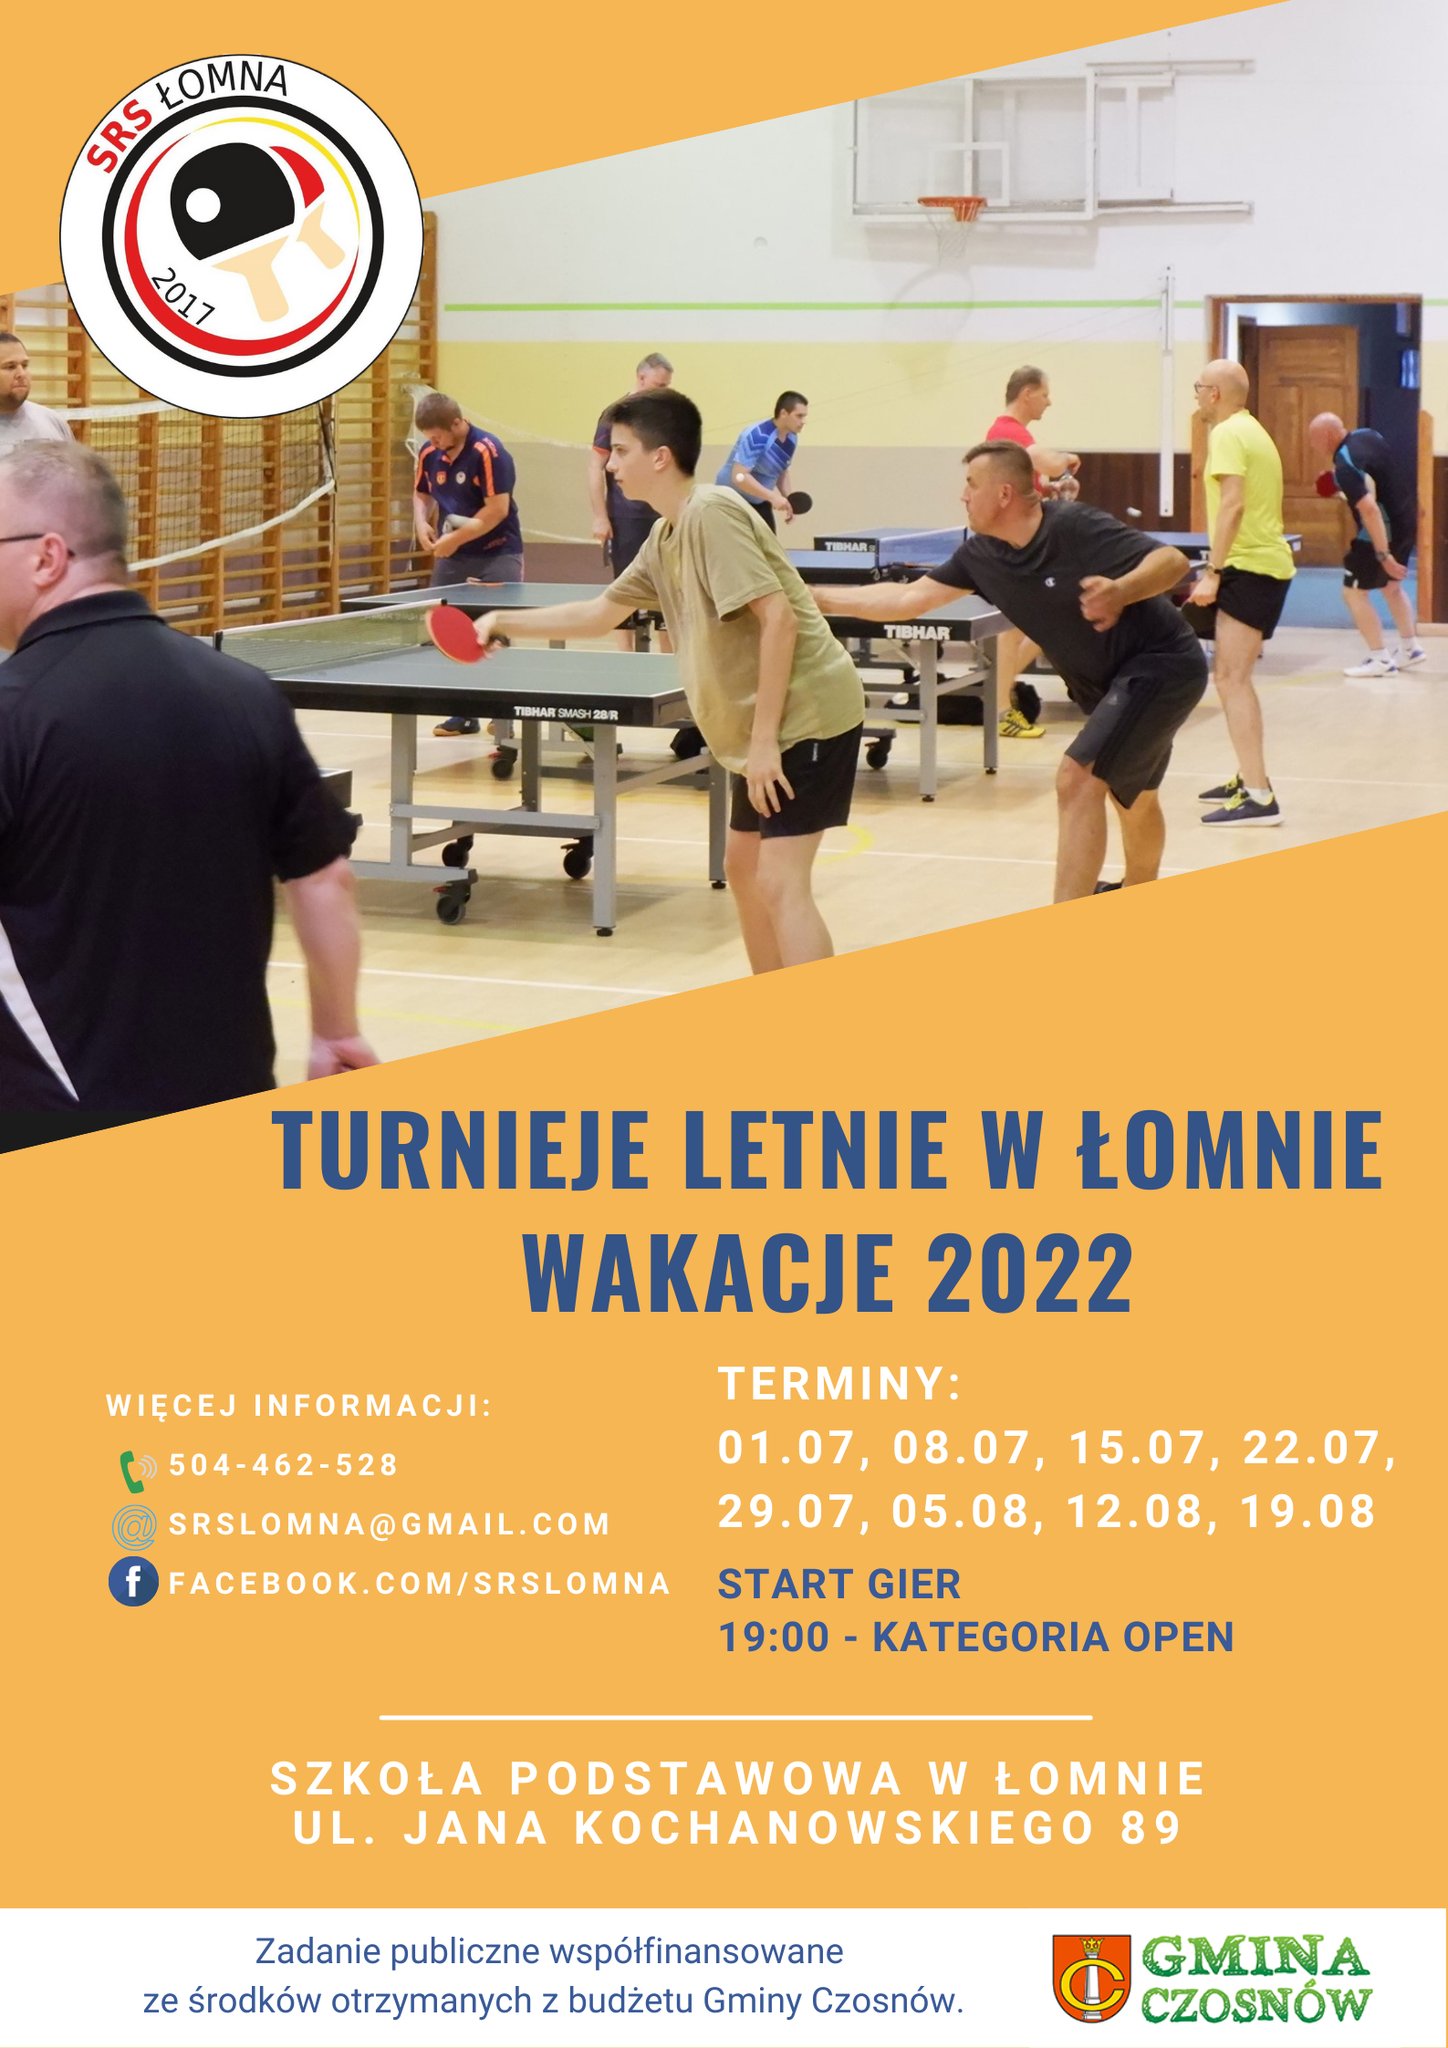 Plakat turnieju Turnieje letnie w Łomnie wakacje 2022 - termin 2